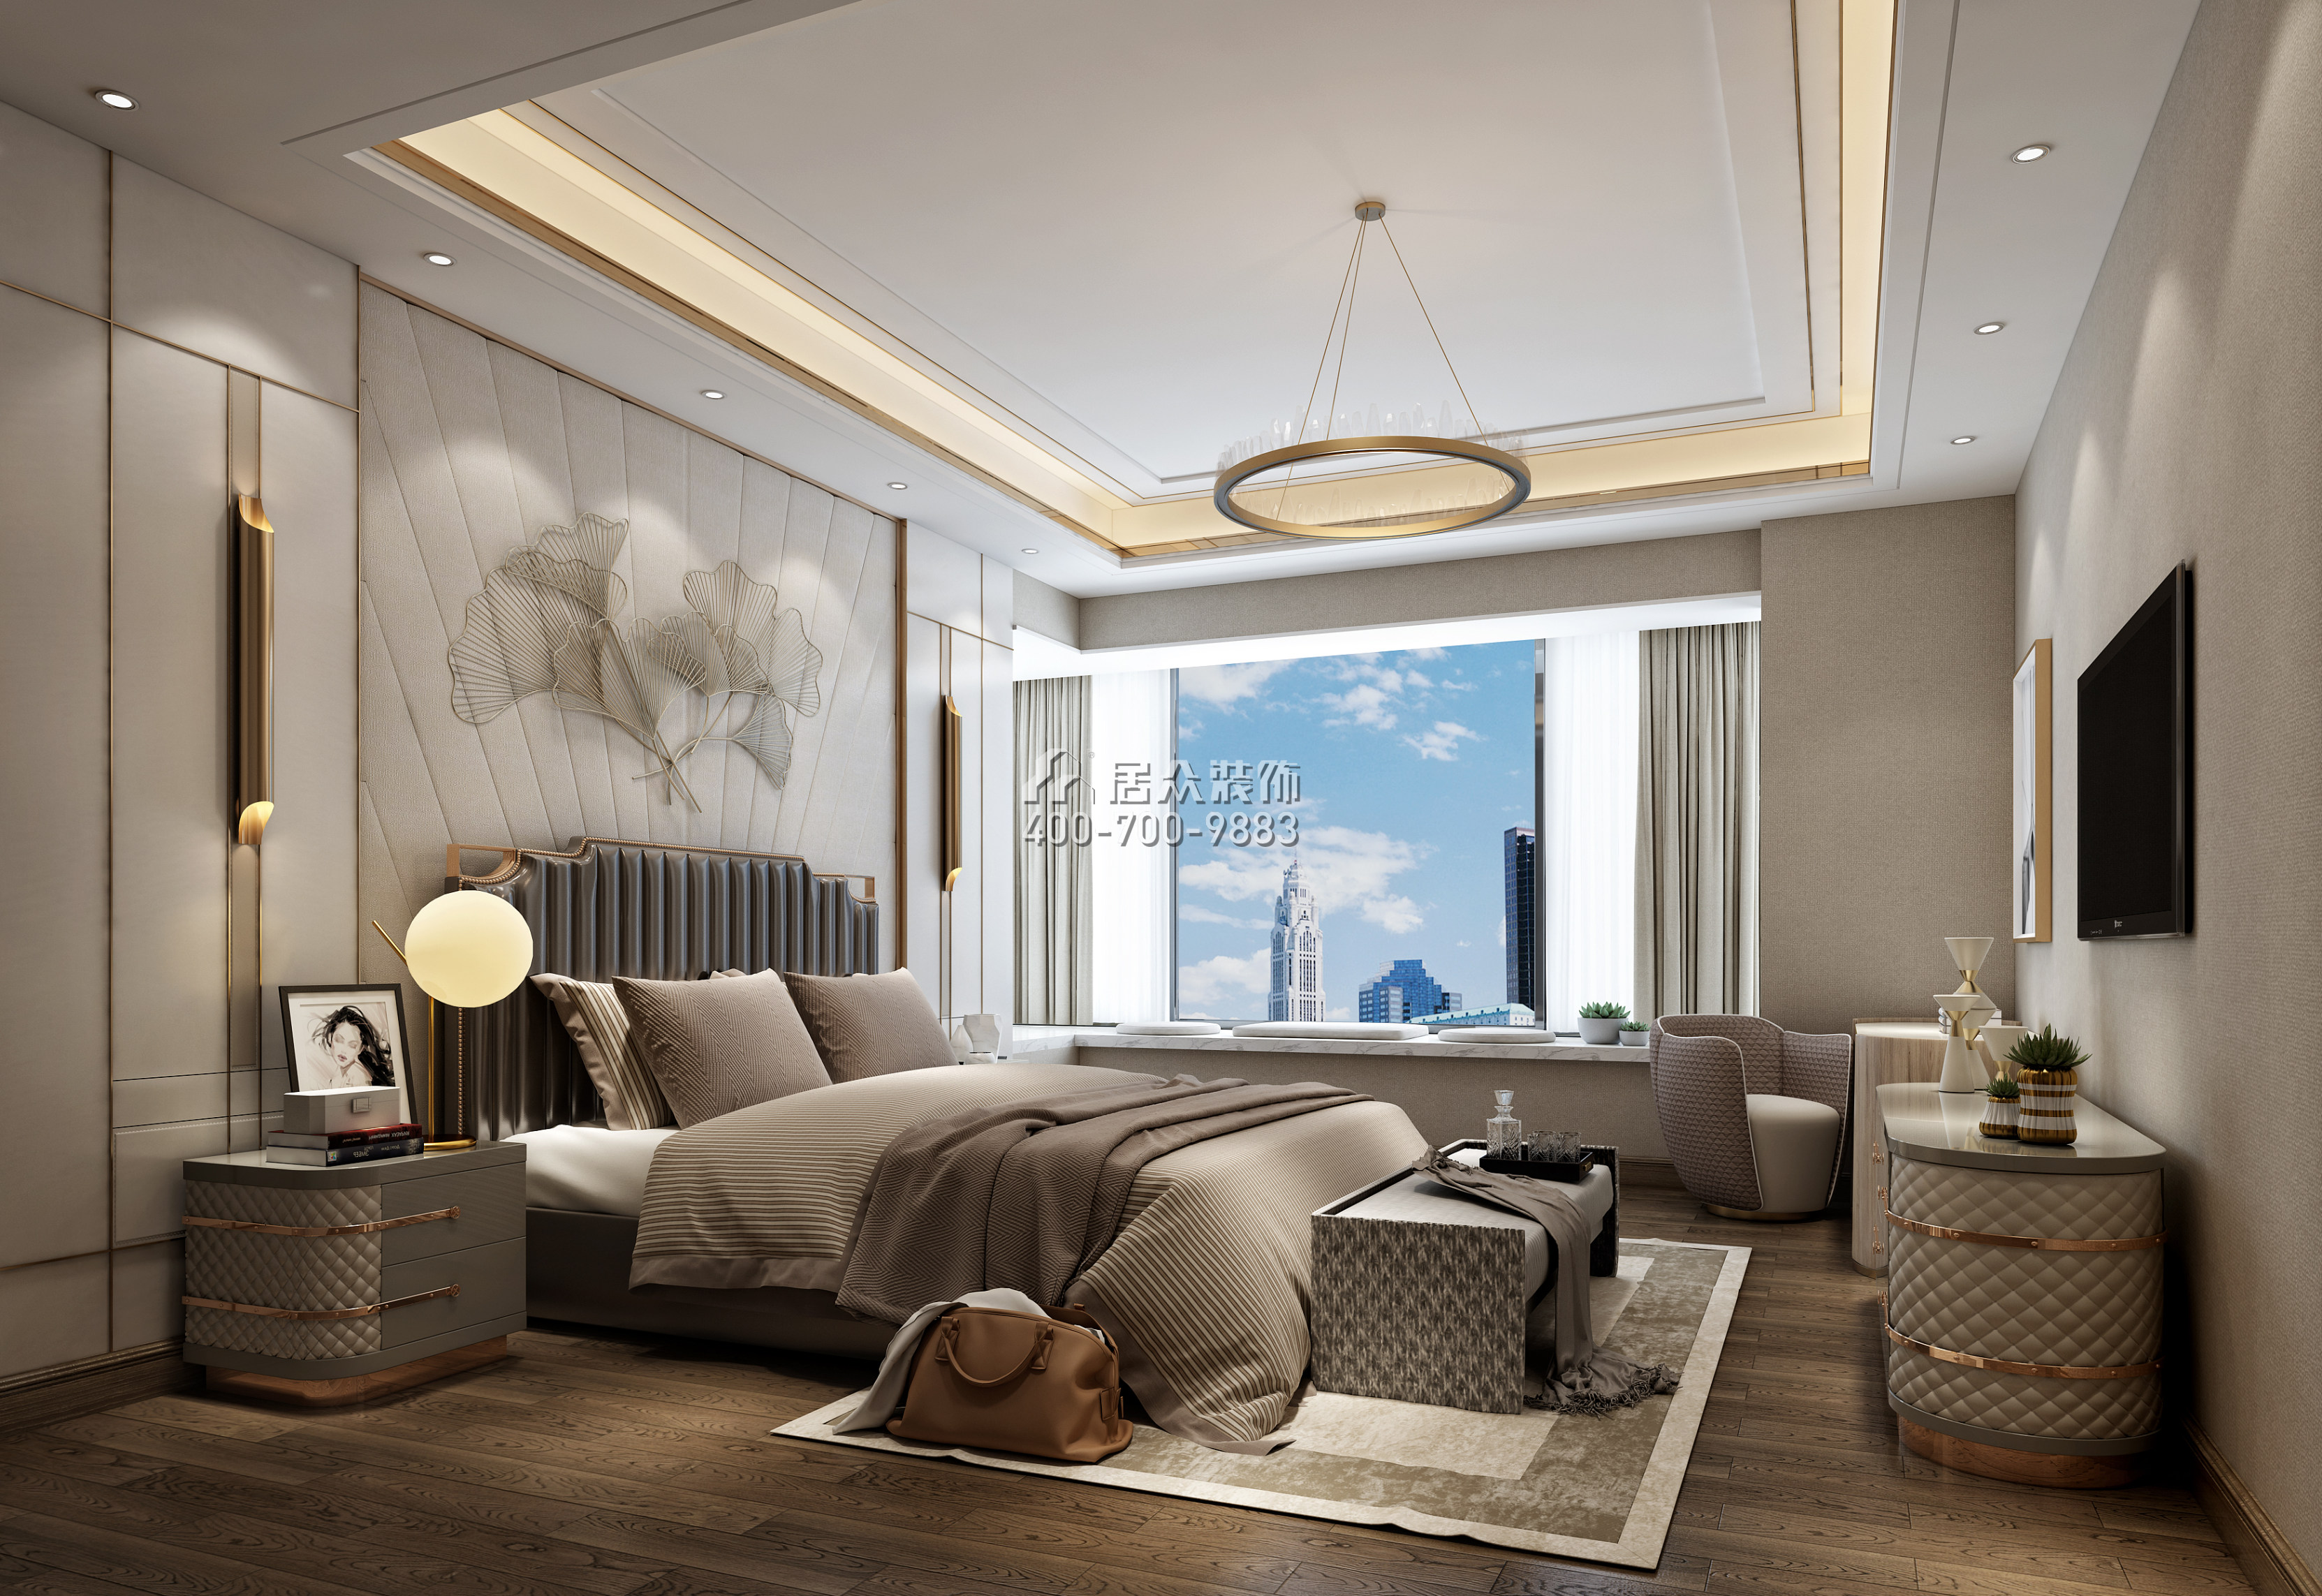 锦绣山河200平方米欧式风格平层户型卧室装修效果图